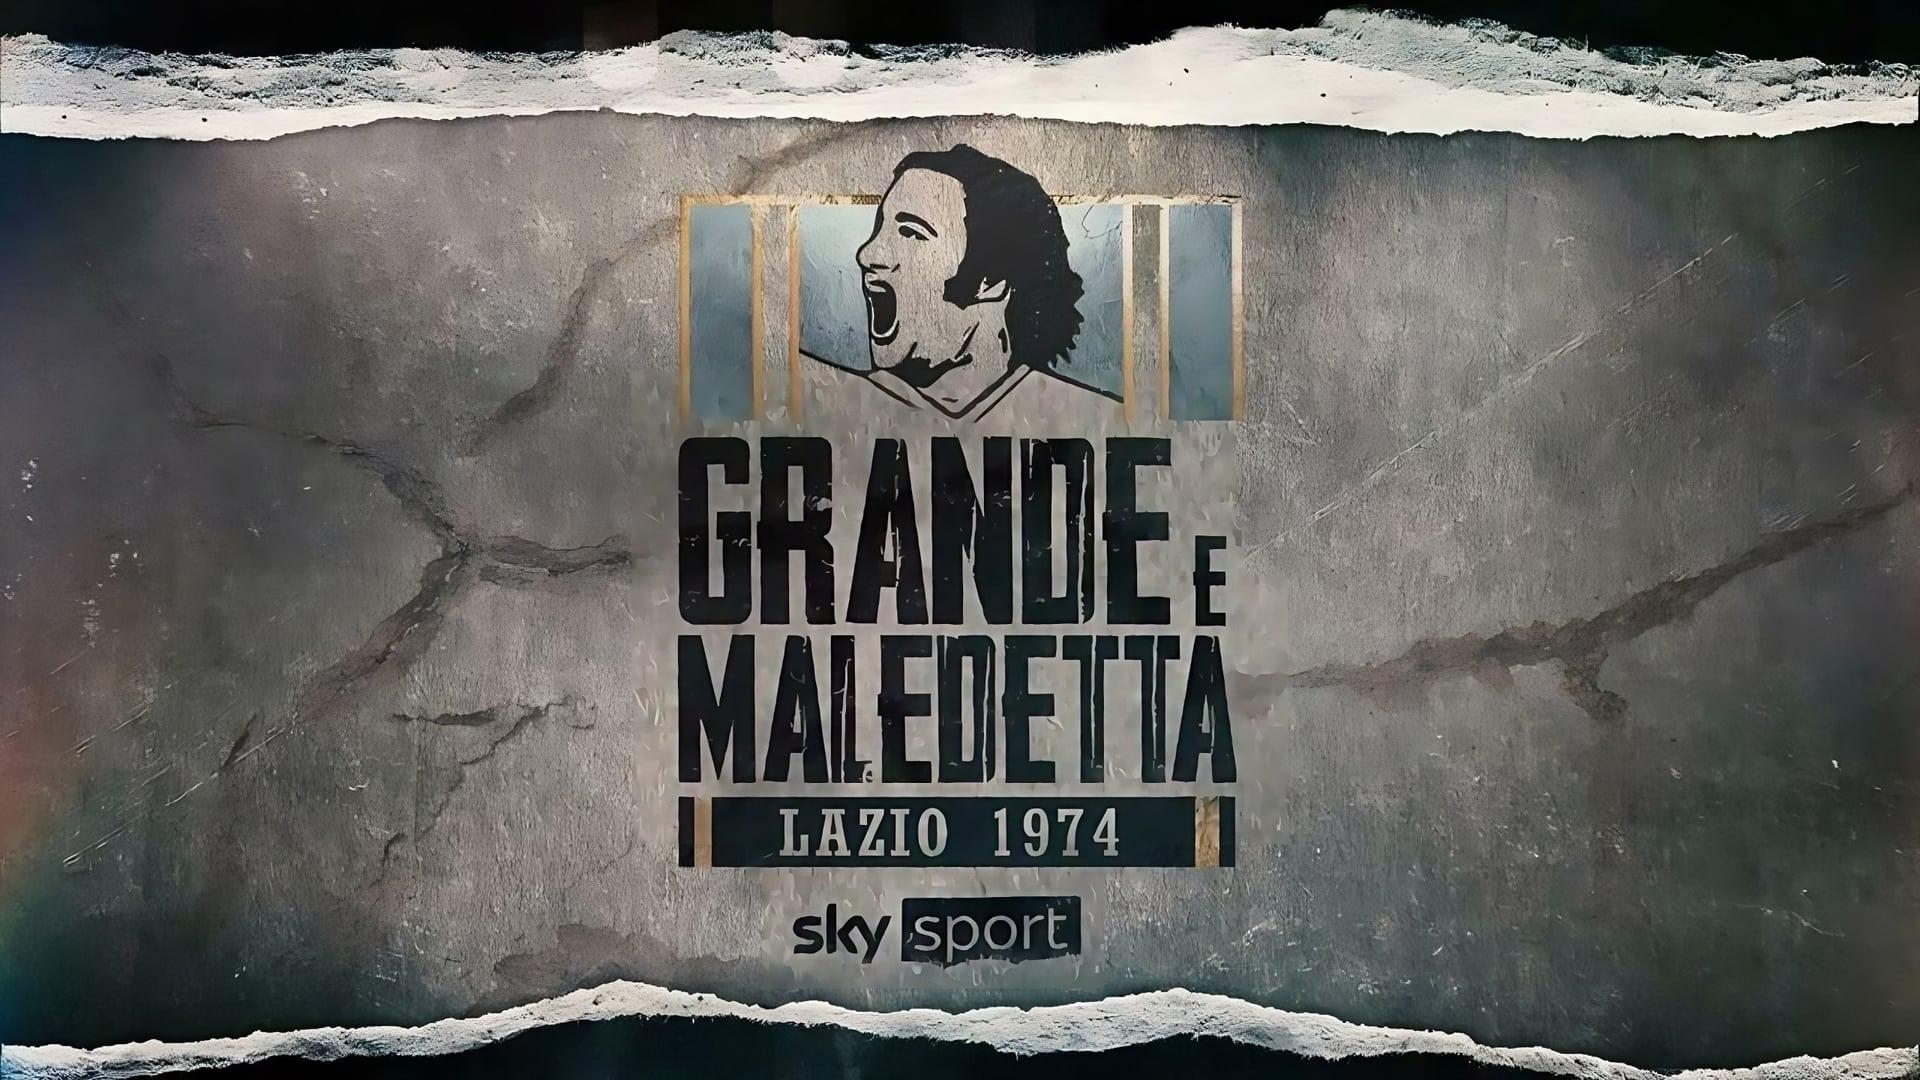 Paolo Bertolucci backdrop